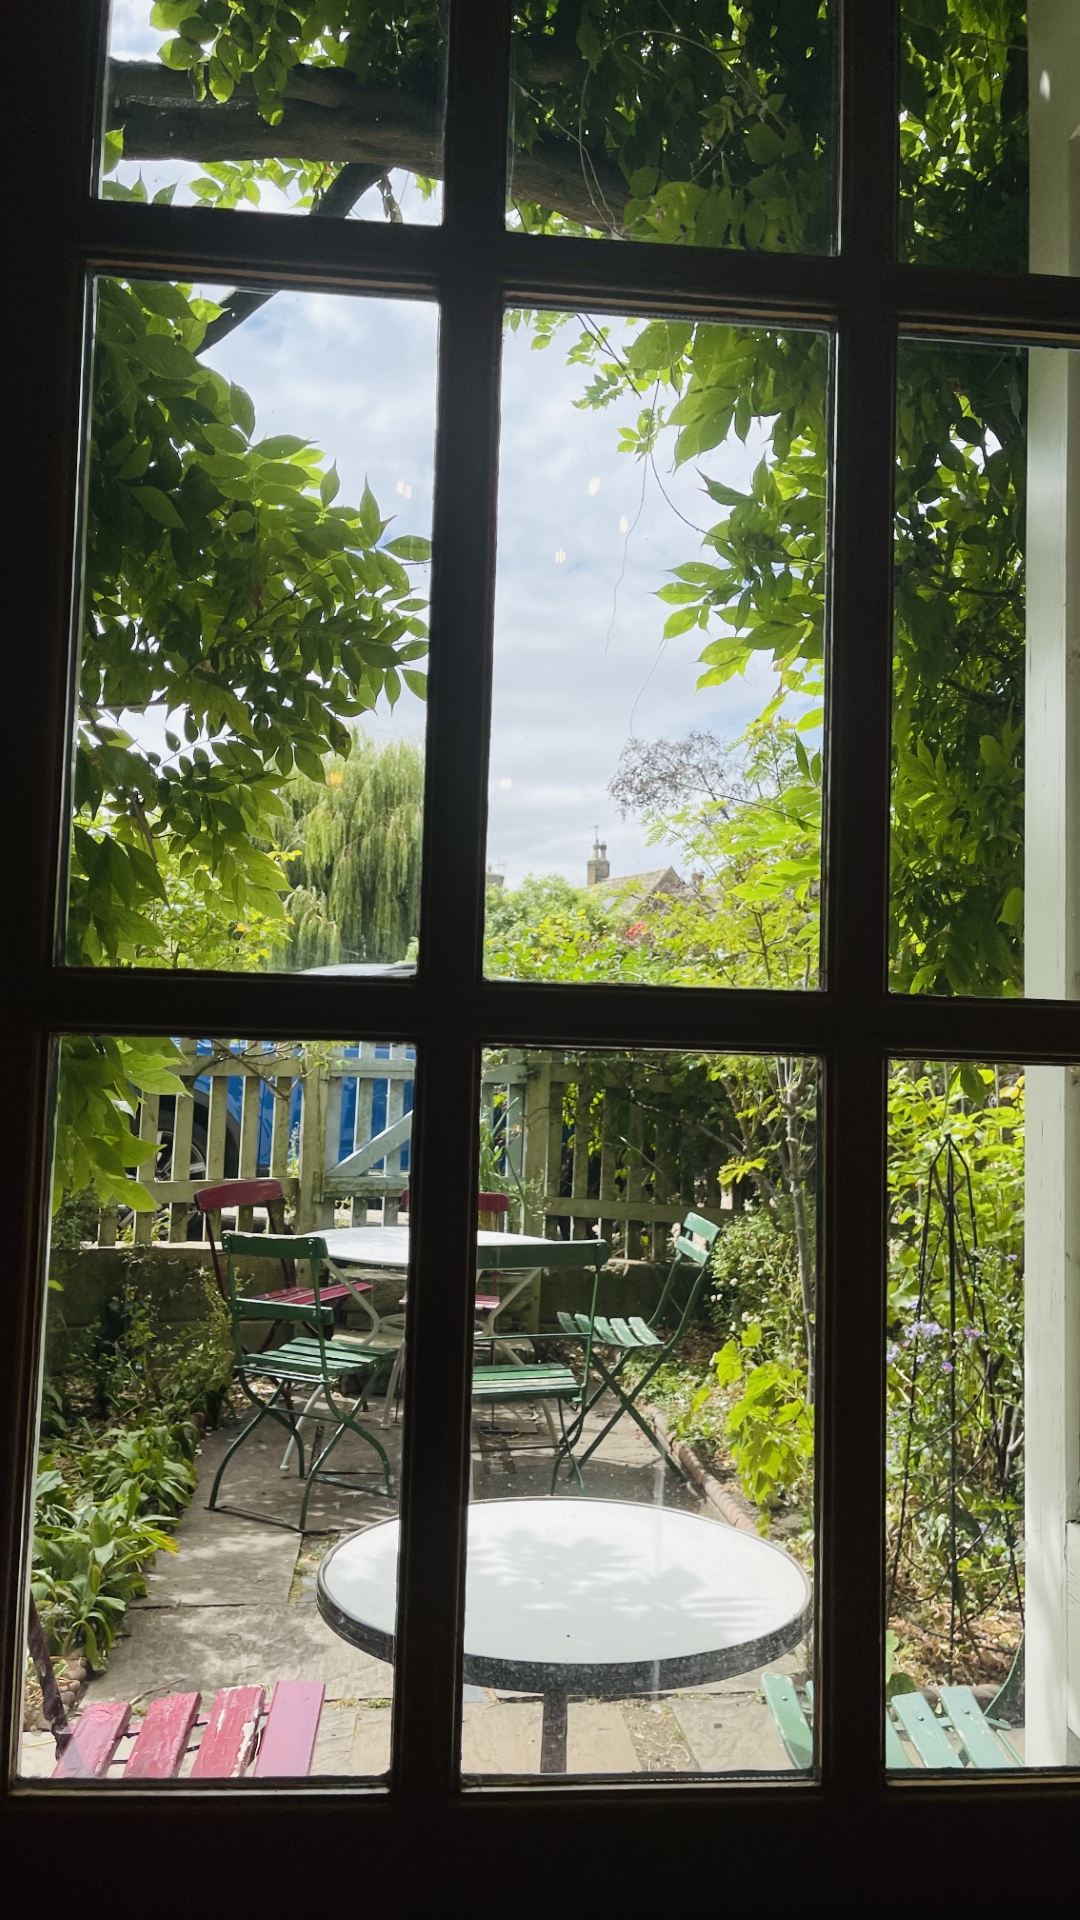 2022-07-30-13.16.08 去剑桥Ely伊利小镇的孔雀茶室喝下午茶(英国最好的米其林茶室) 照片 生活 美食 资讯